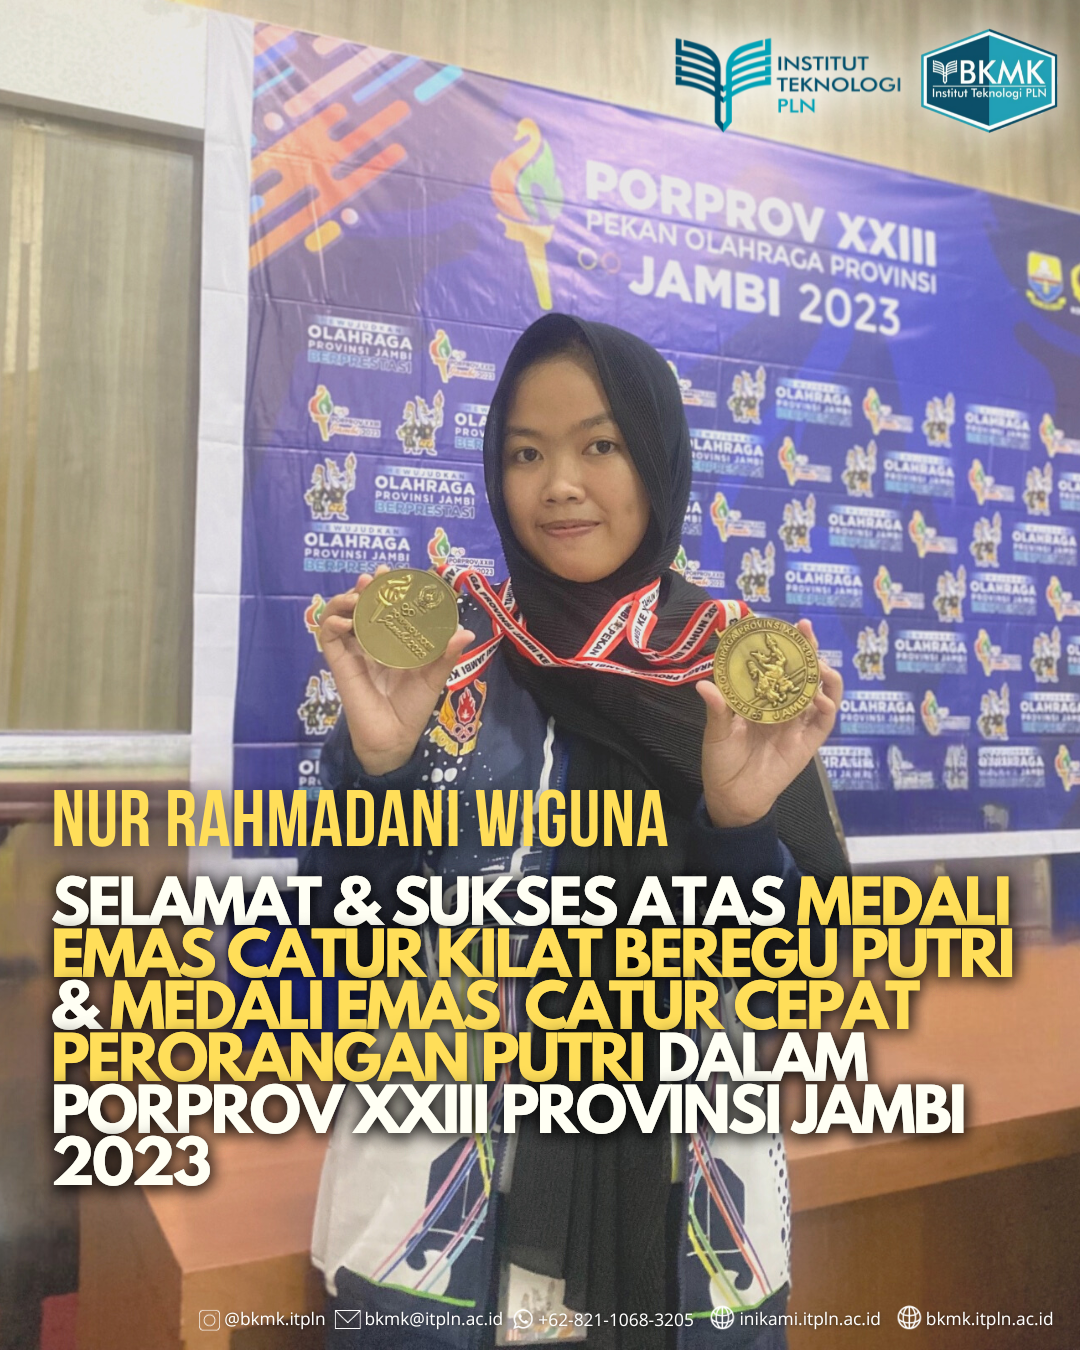 Mahasiswa ITPLN Berhasil Meraih 2 Medali Emas Dalam PORPROV XXVIII Provinsi Jambi 2023